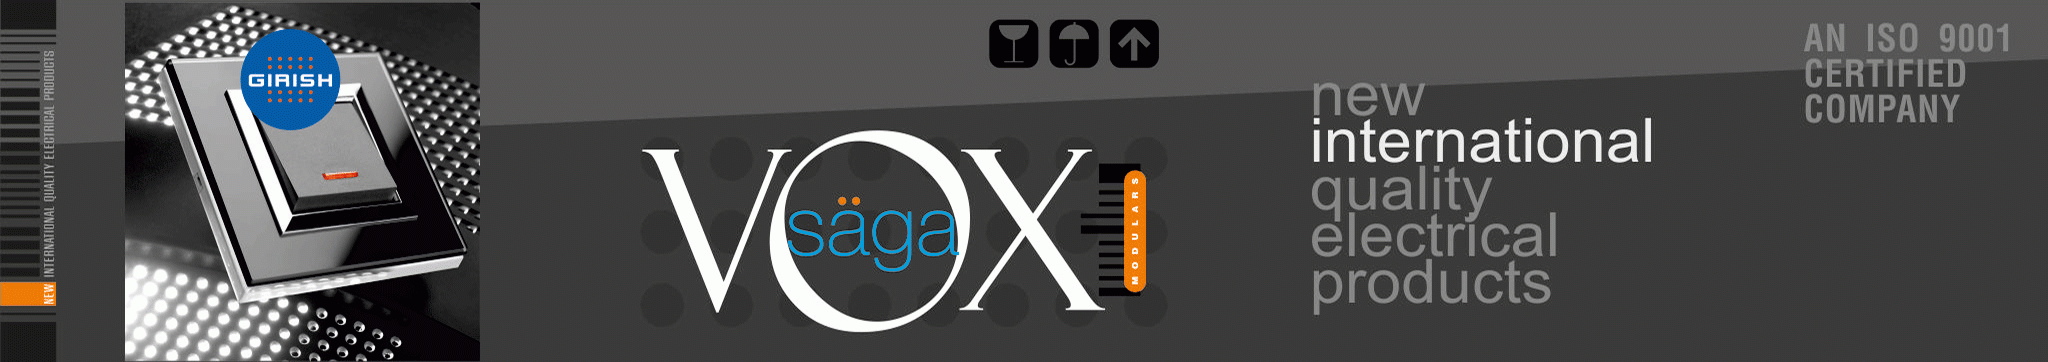 Vox-Saga-Inner-Plate